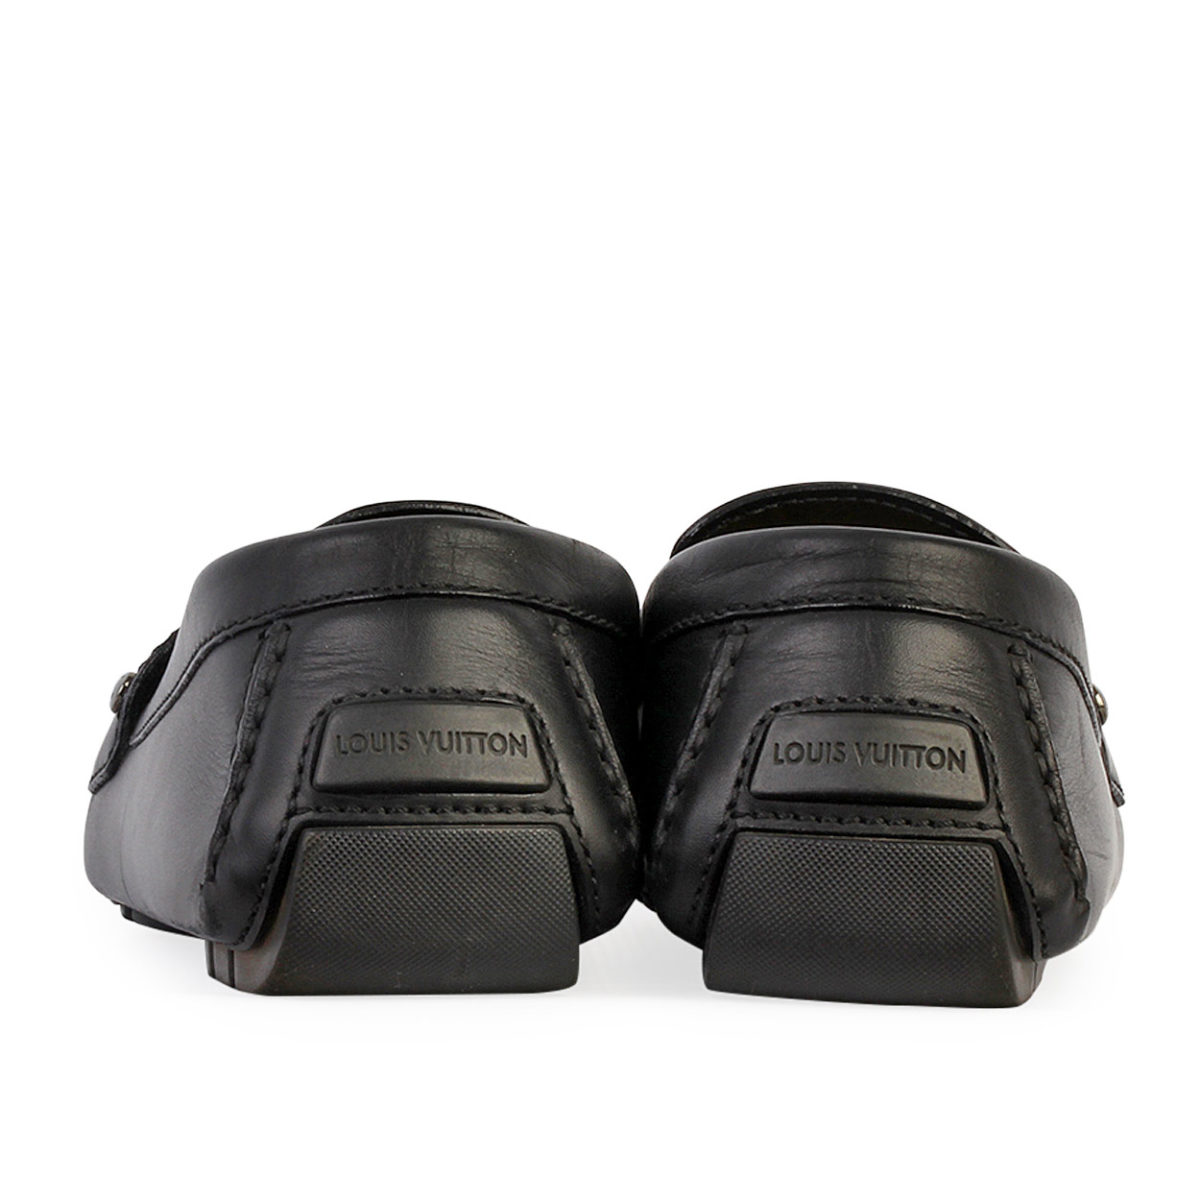 Louis Vuitton Black Leather Driver Loafers Size 42.5 Louis Vuitton